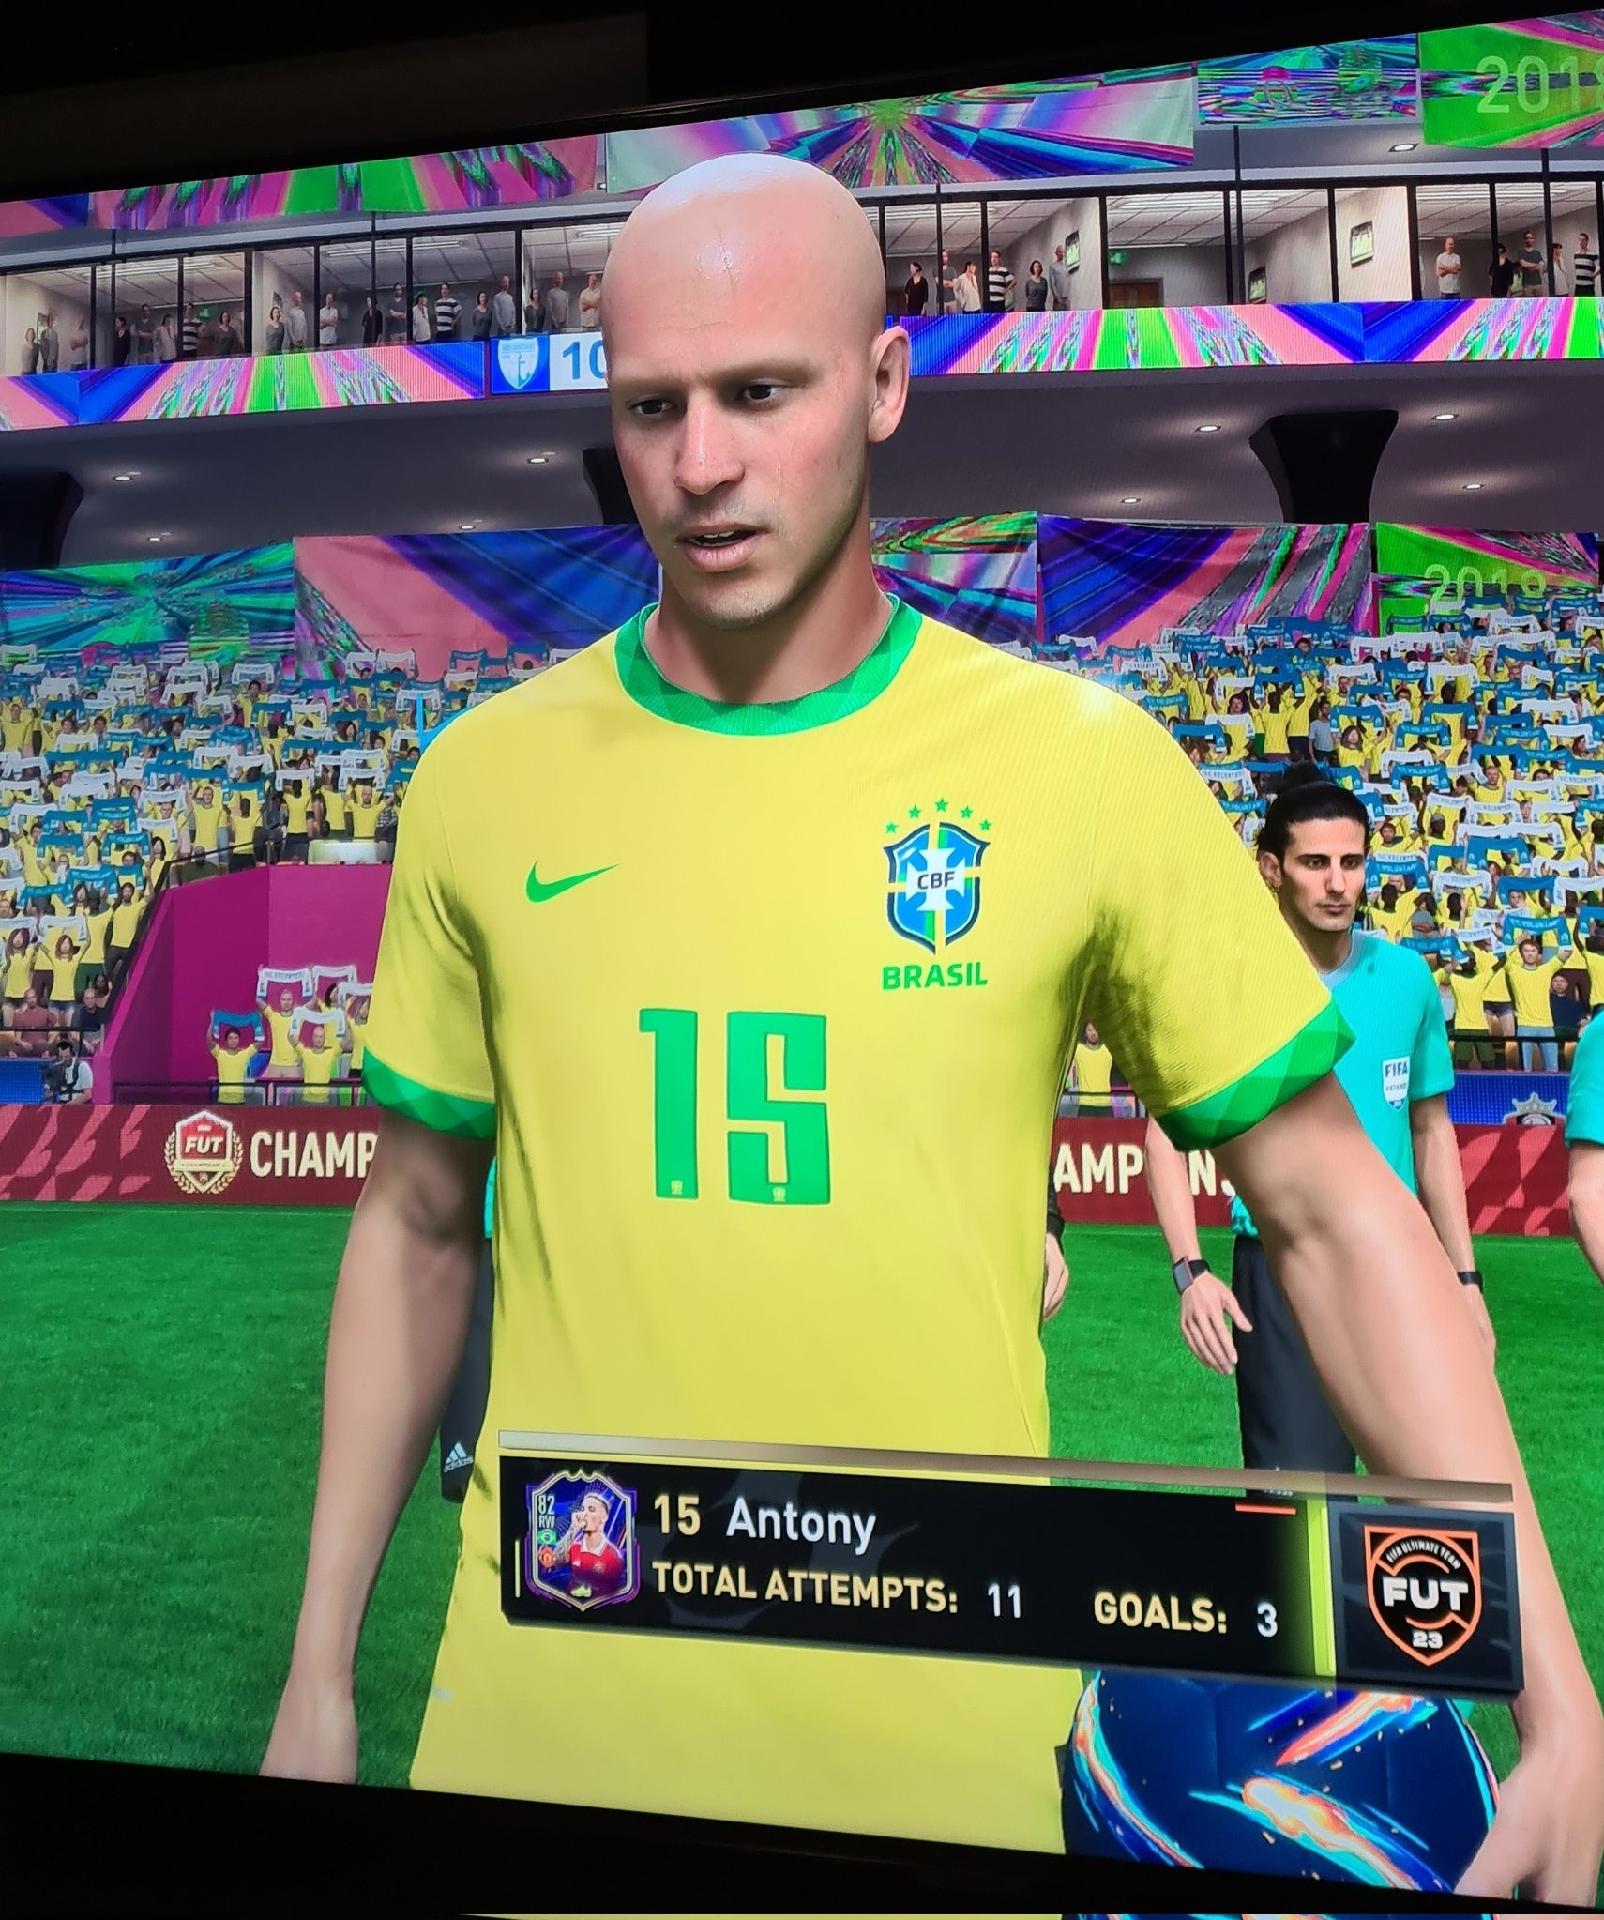 Fifa 23 - Como jogar com times Brasileiros!!! 